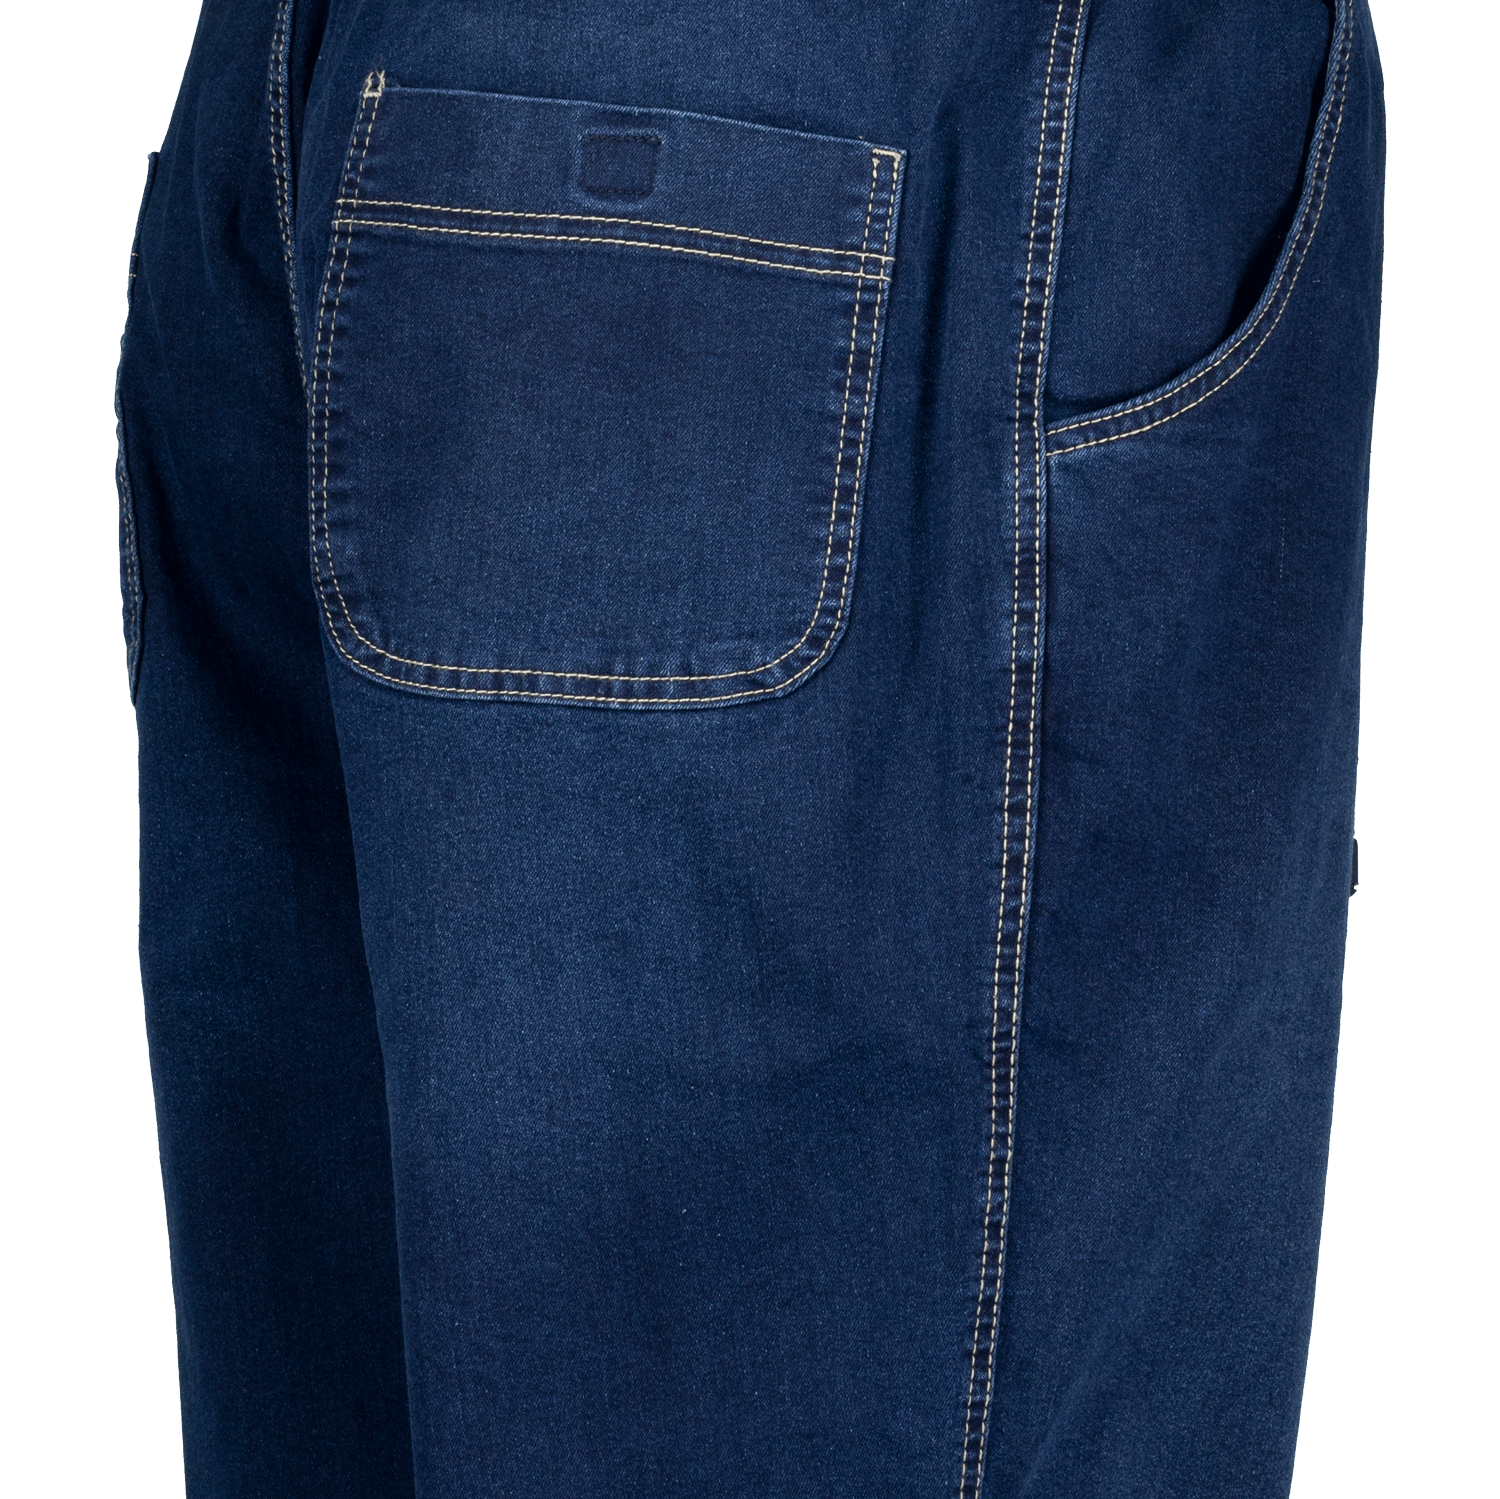 Jogging Jeans blau stonewash von Abraxas in großen Größen von 2XL bis 10XL